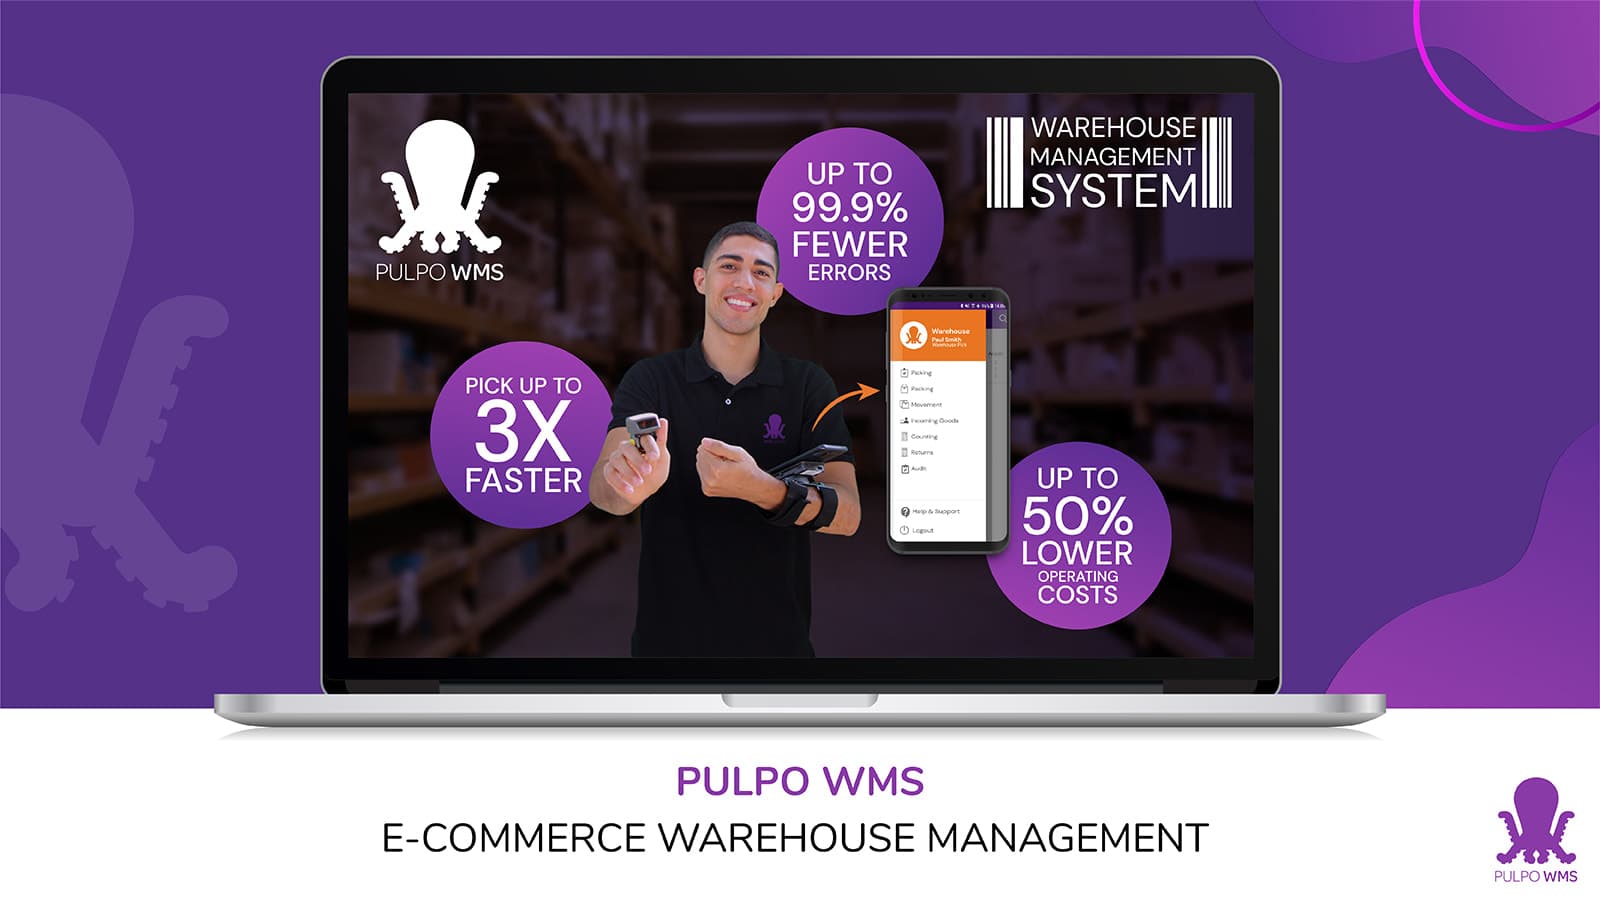 PULPO WMS Warehouse Management